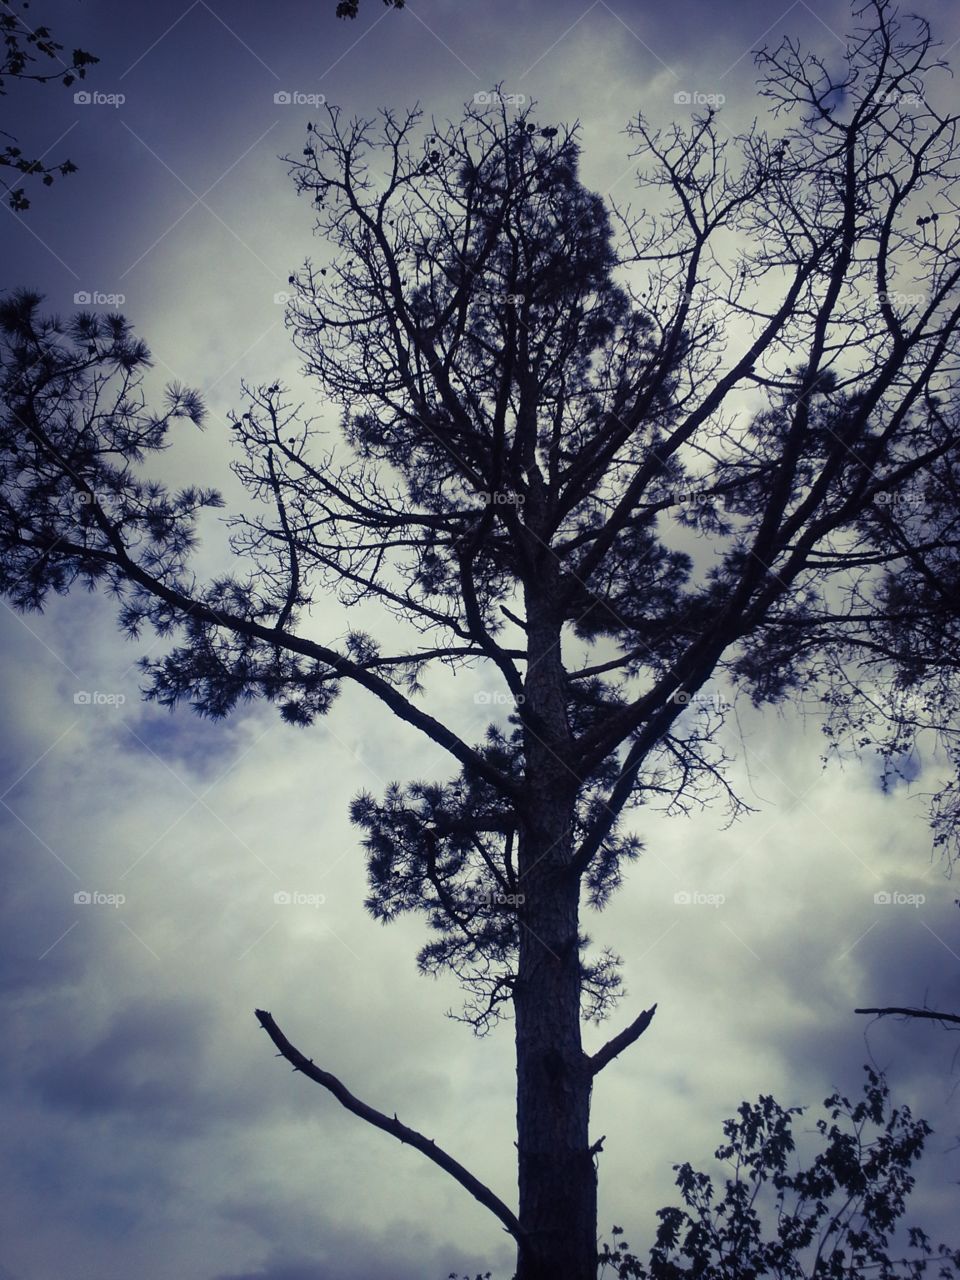 Tree silhouette 